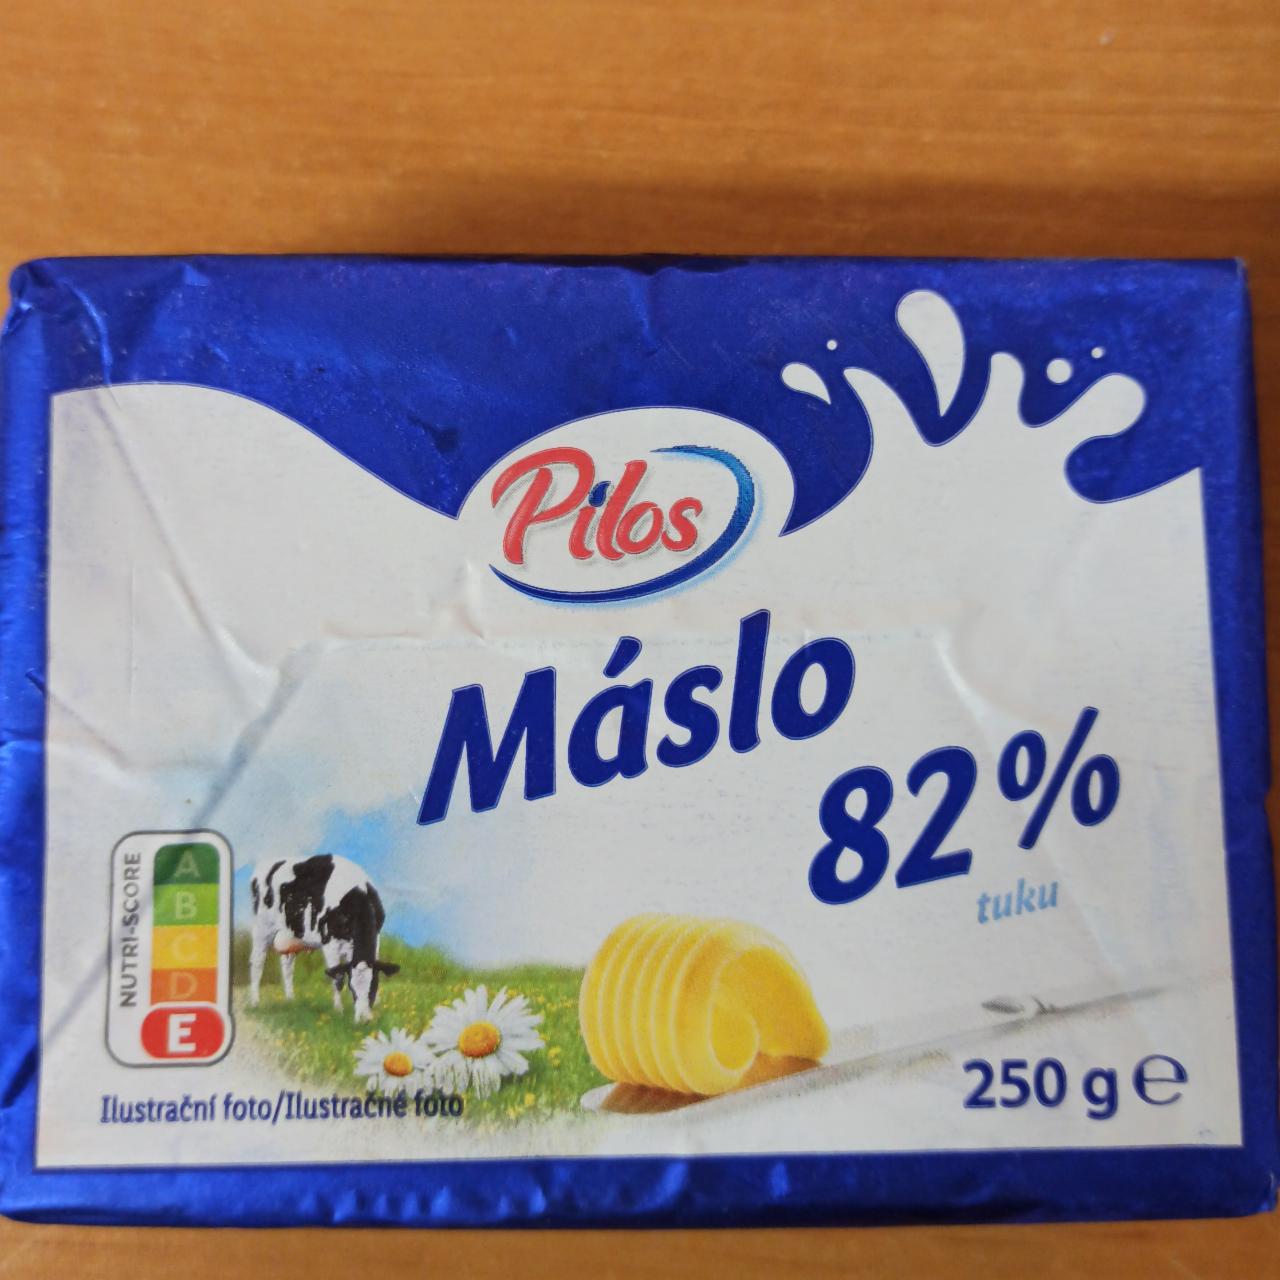 Фото - Maslo 82% Pilos